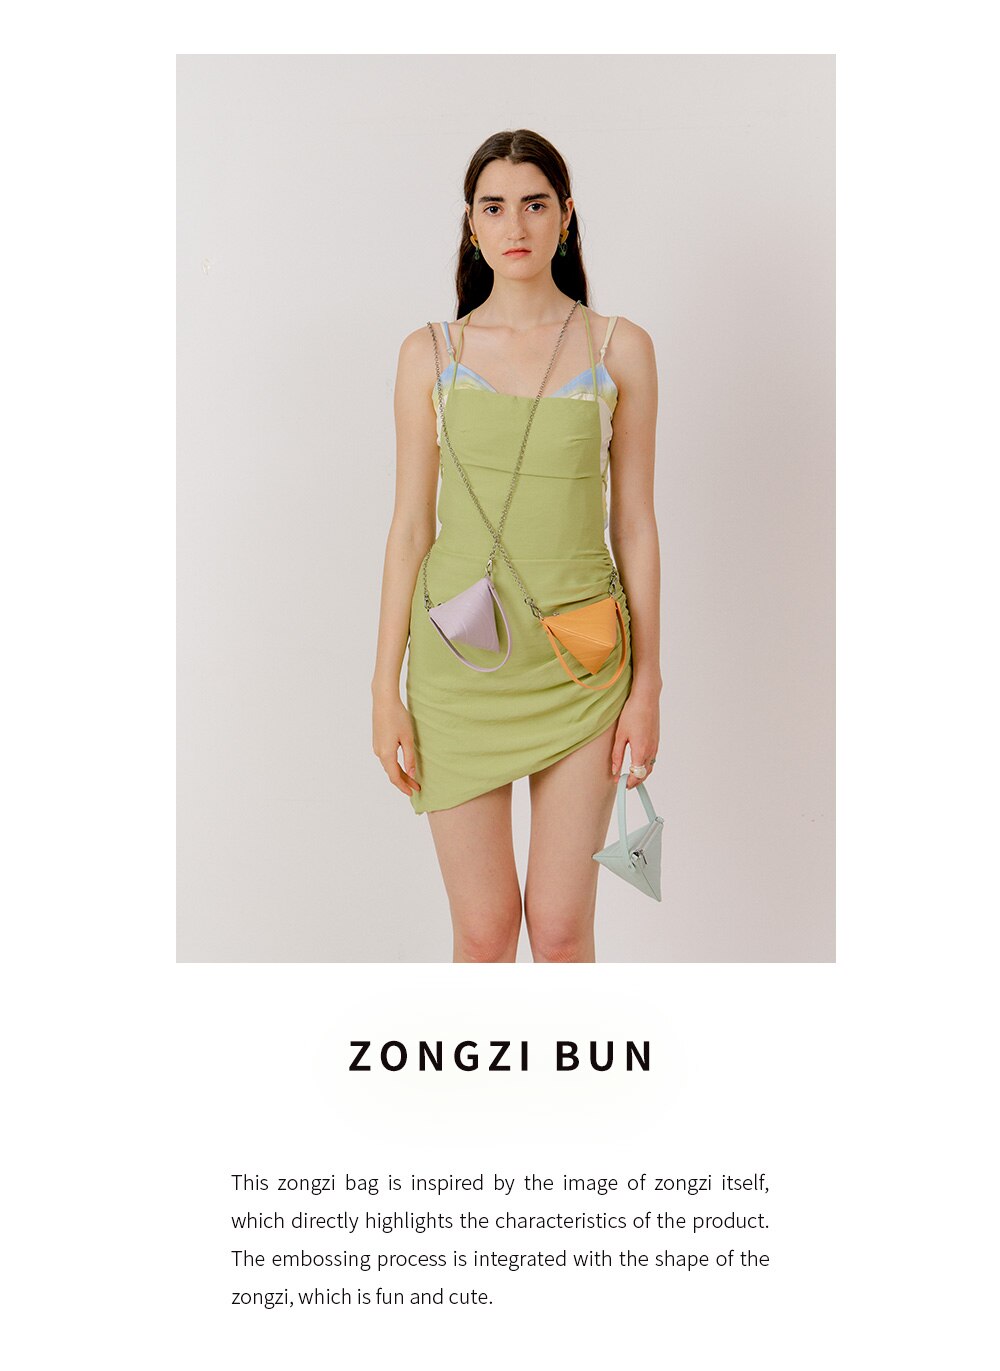 La Festin Zongi Zen Wallet Purse Bag